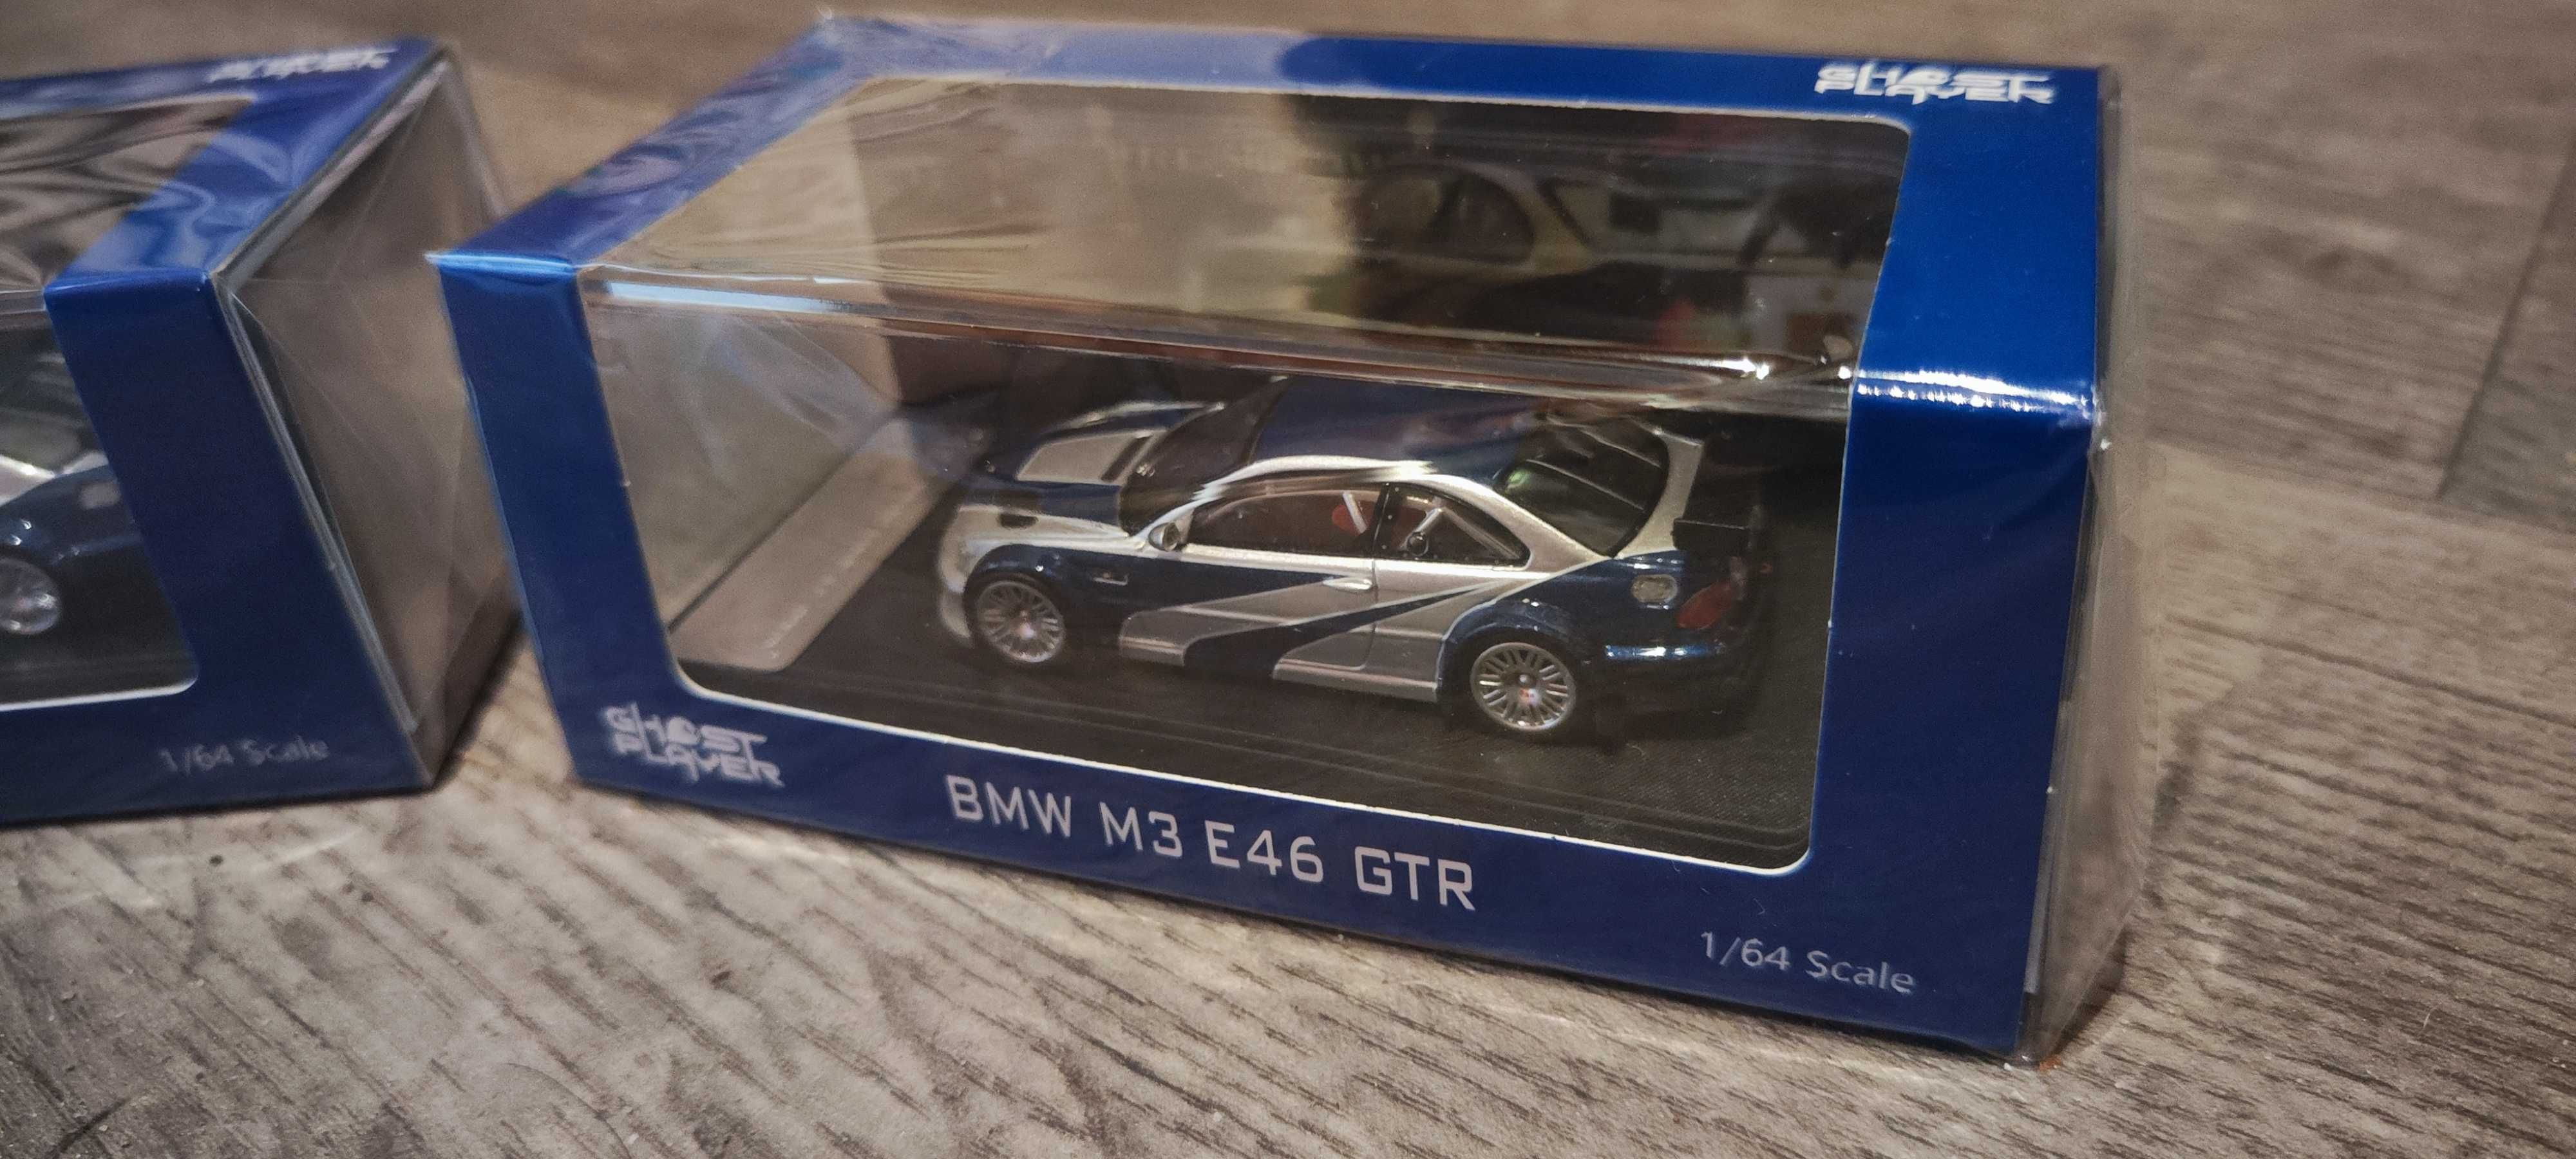 NOWY Model Samochodu BMW M3 E46 GTR NFS Limited Edition !!